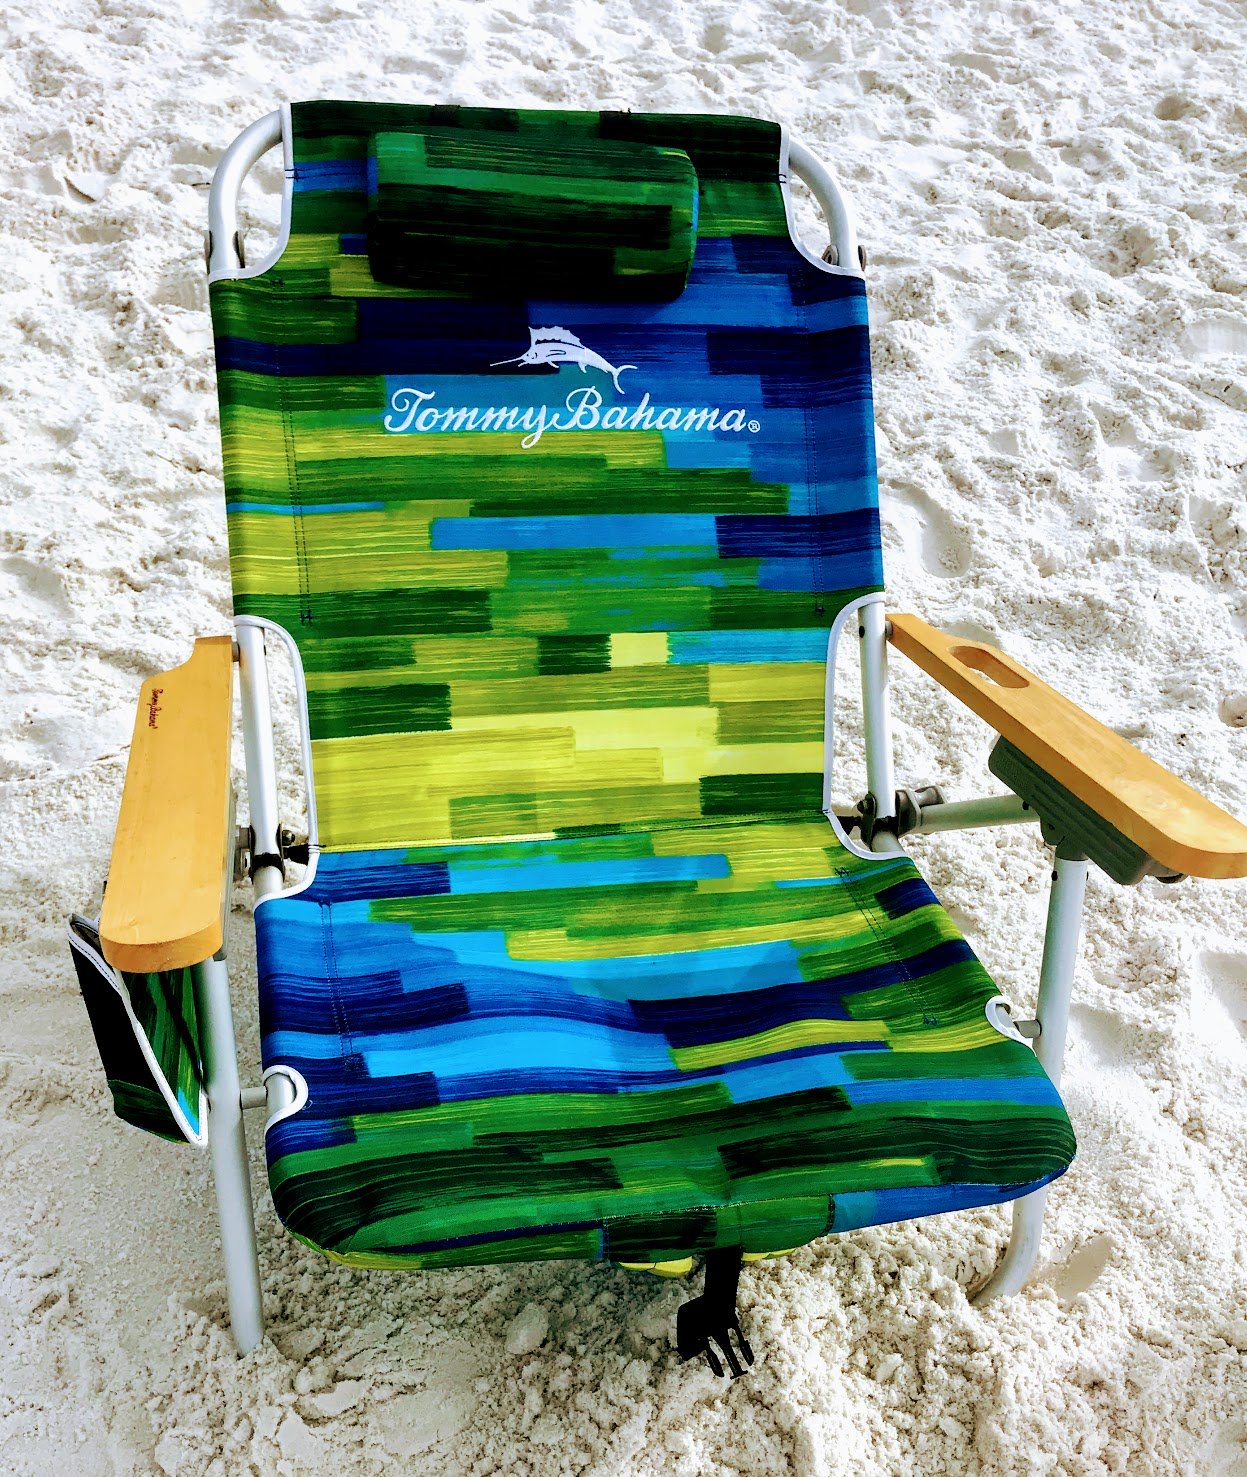 folding beach chair